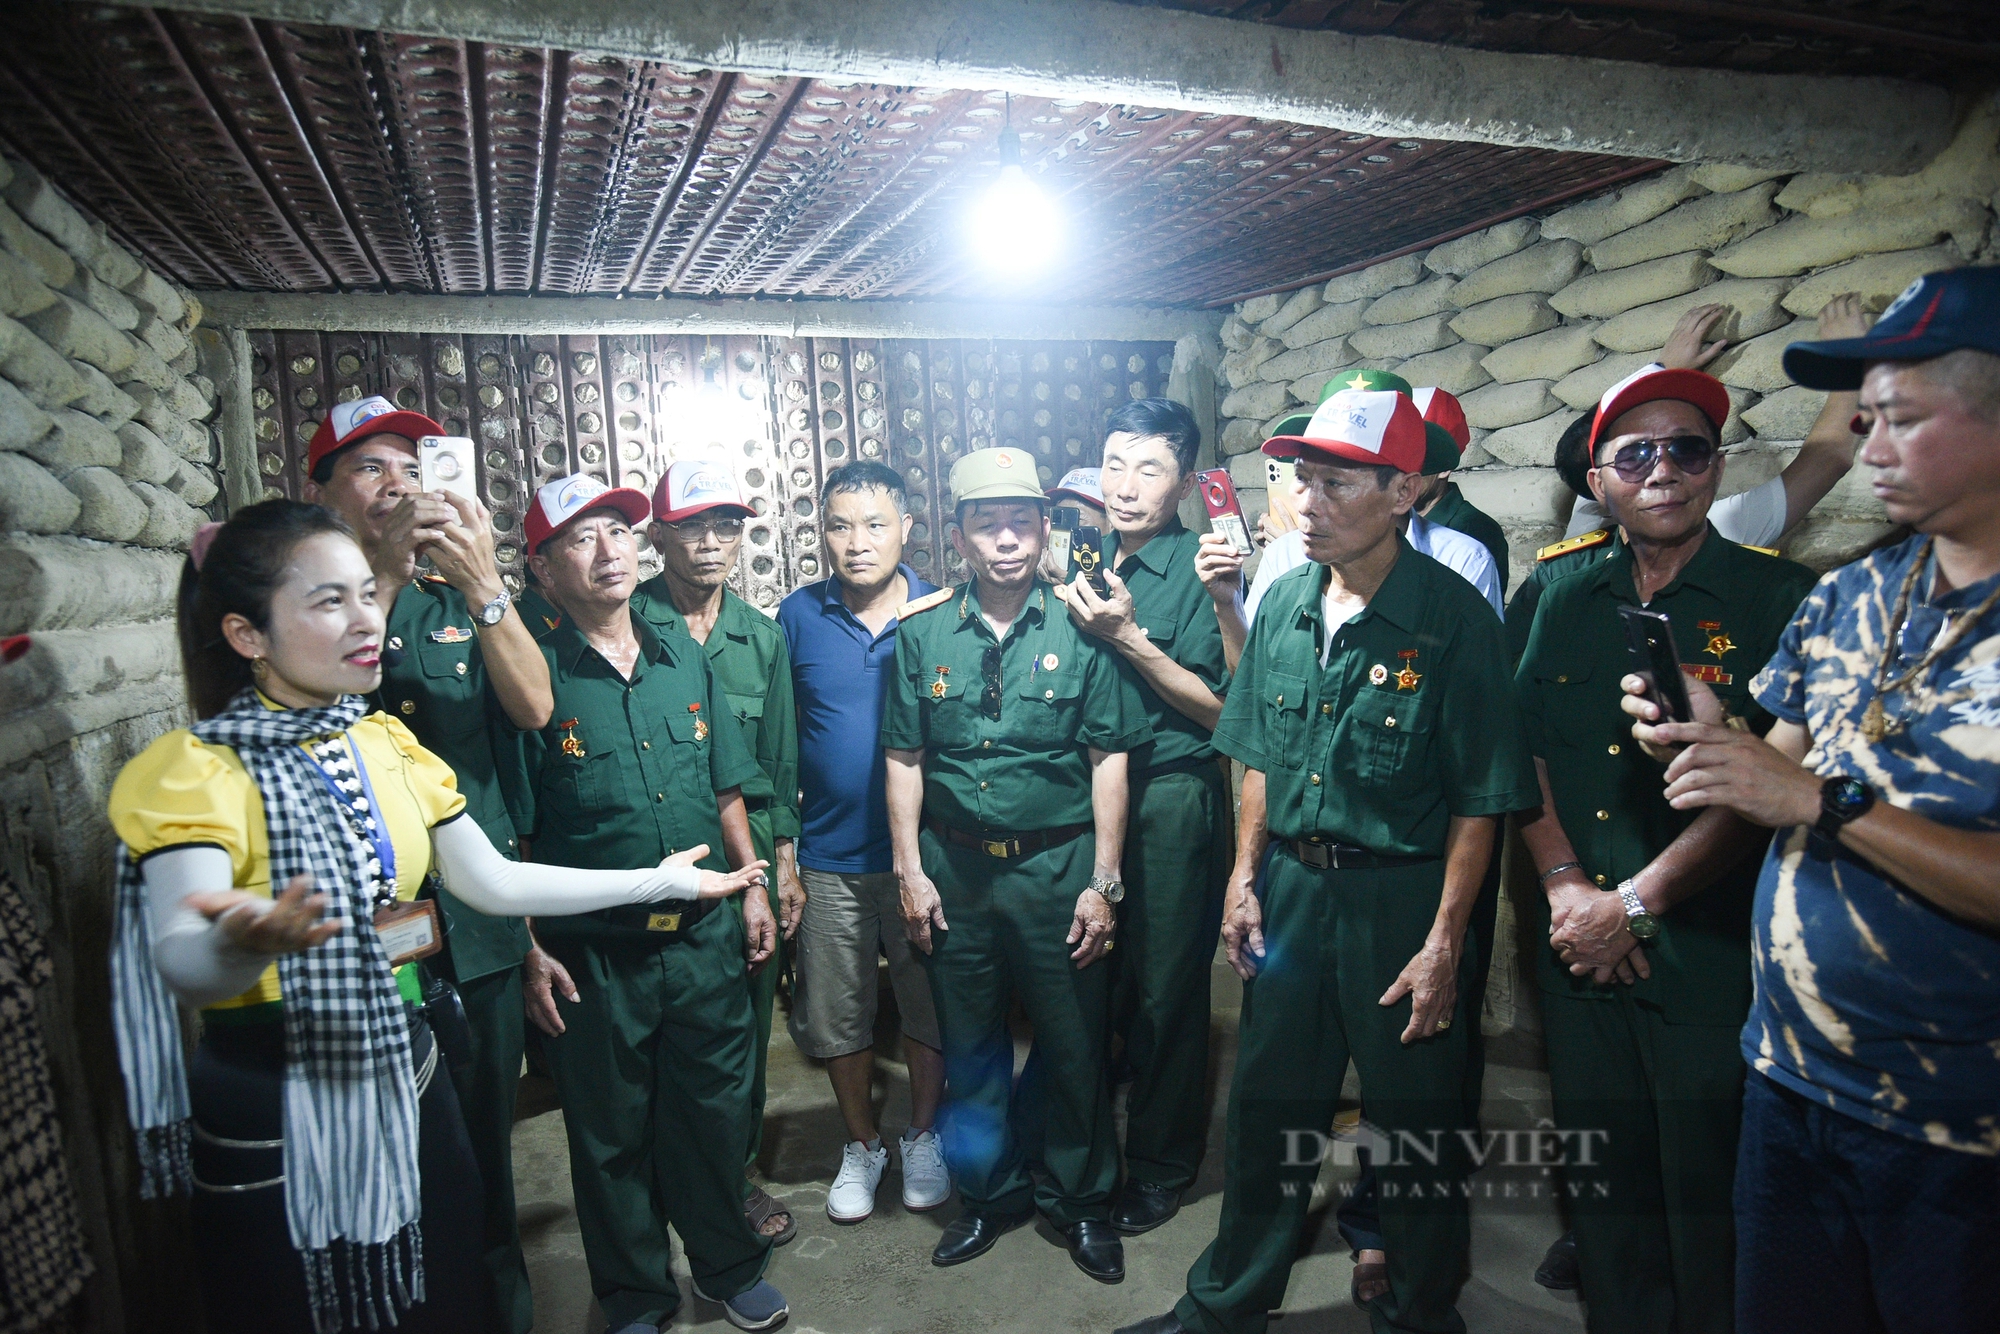 Cận cảnh căn hầm ở Điện Biên Phủ, nơi bắt sống tướng Đờ Cát cách đây 70 năm- Ảnh 5.